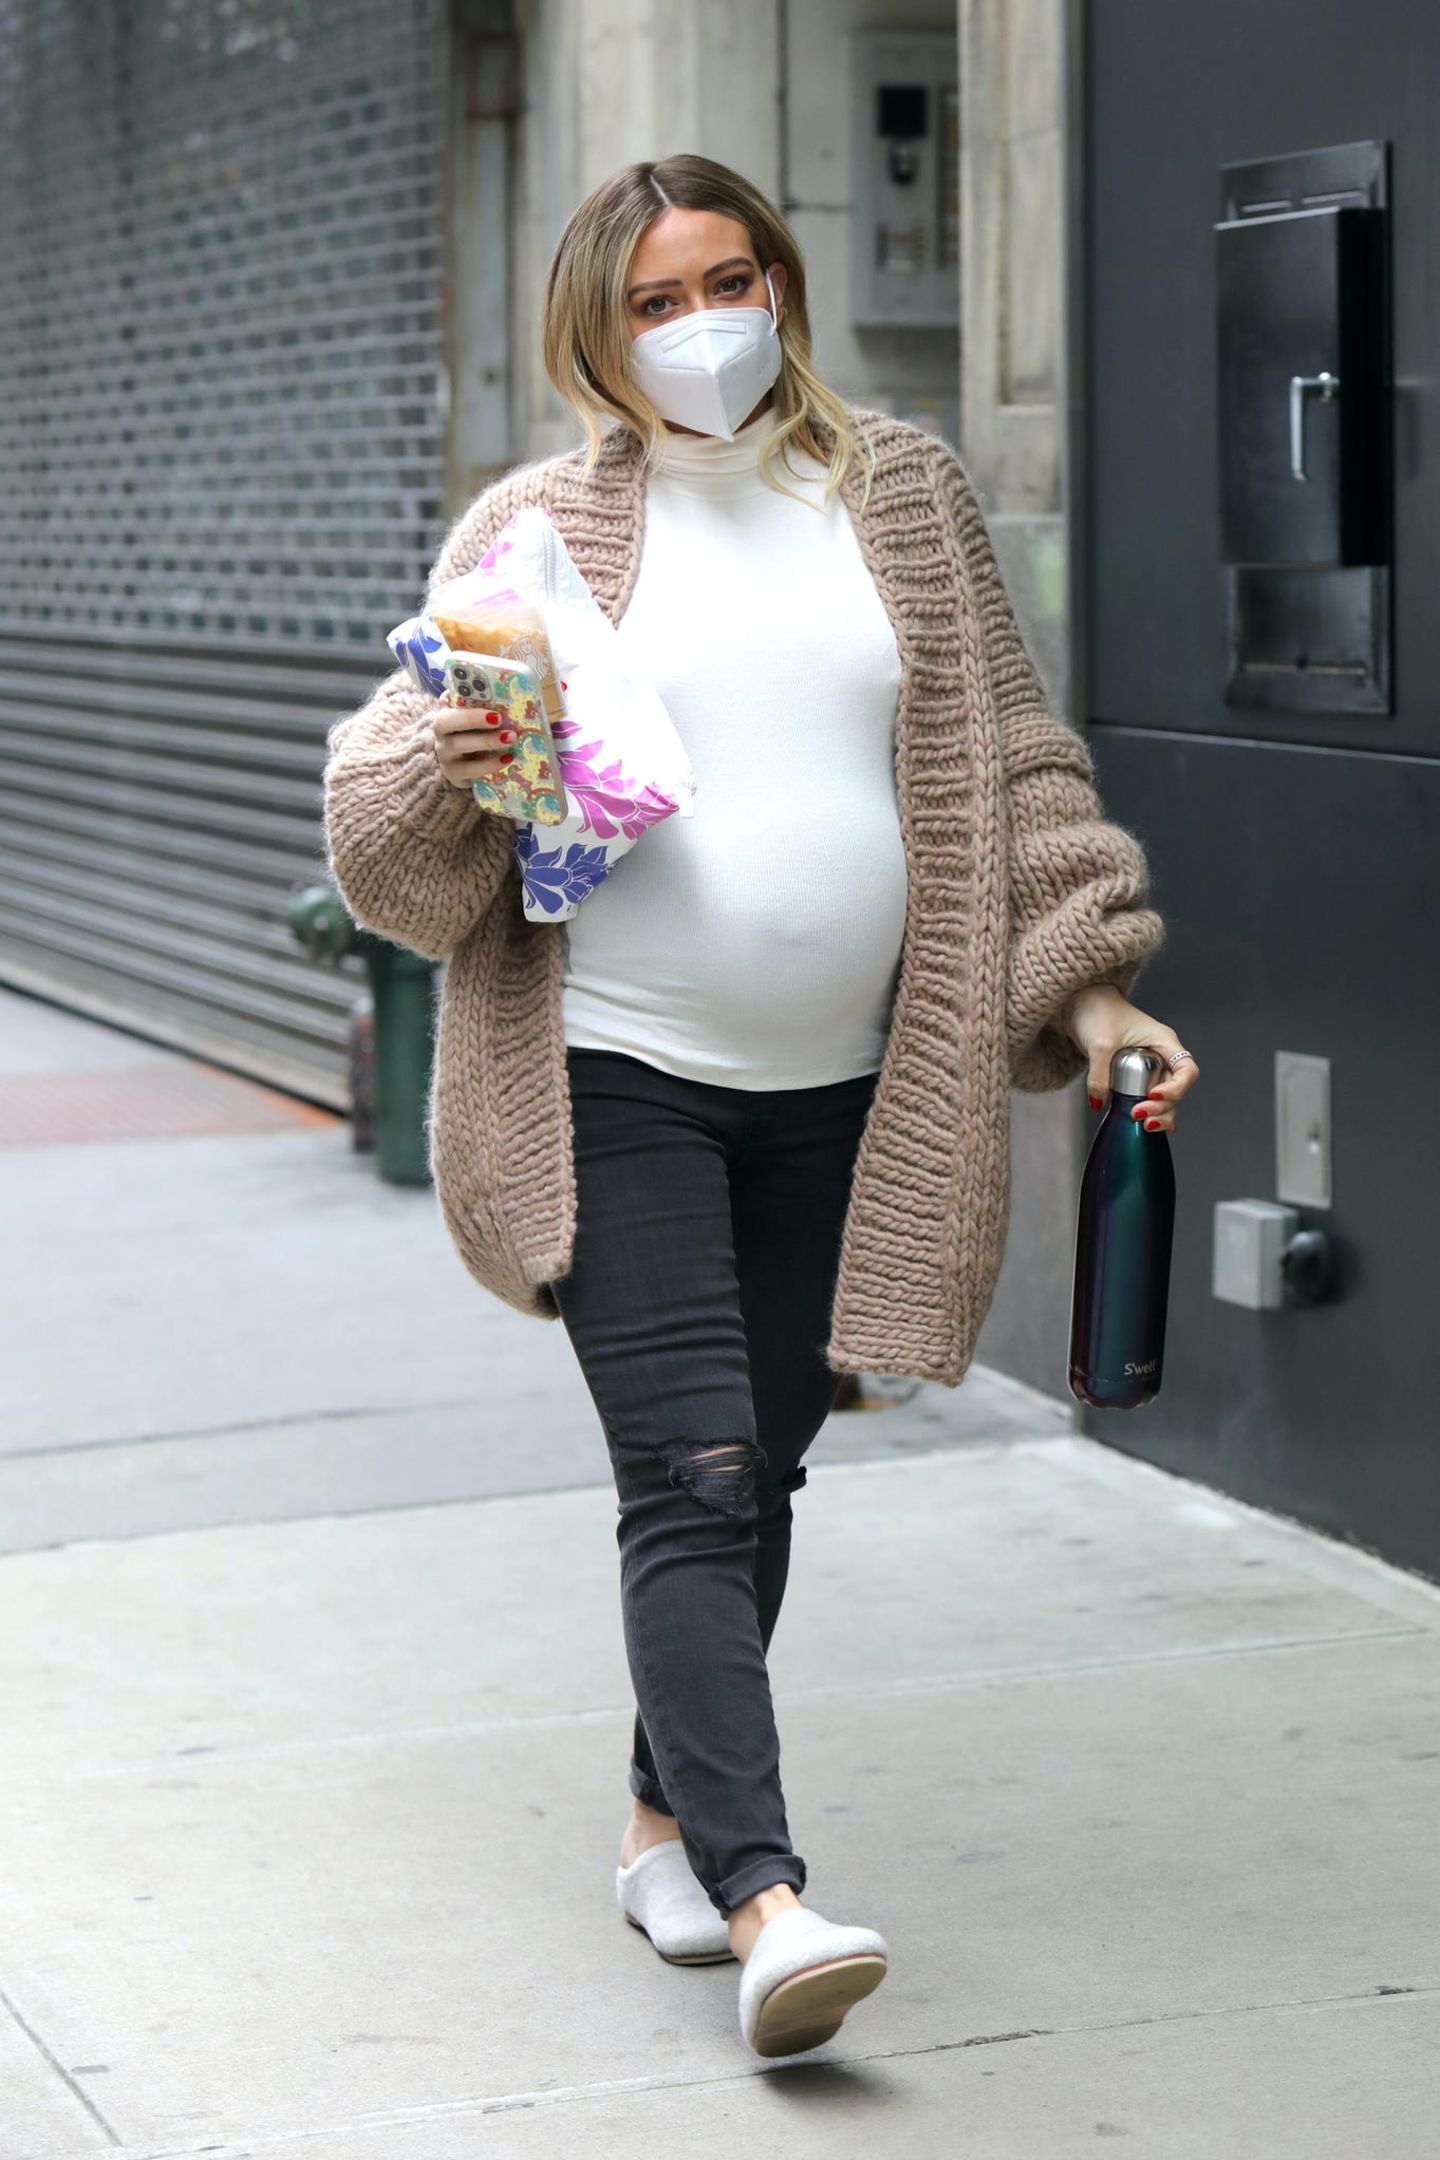 Das Babybäuchlein von Hilary Duff ist nicht zu übersehen: Im gemütlichen Look aus Jeans, Shirt und Cardigan macht sie noch das Set vom Film "Younger" in Manhattan unsicher.